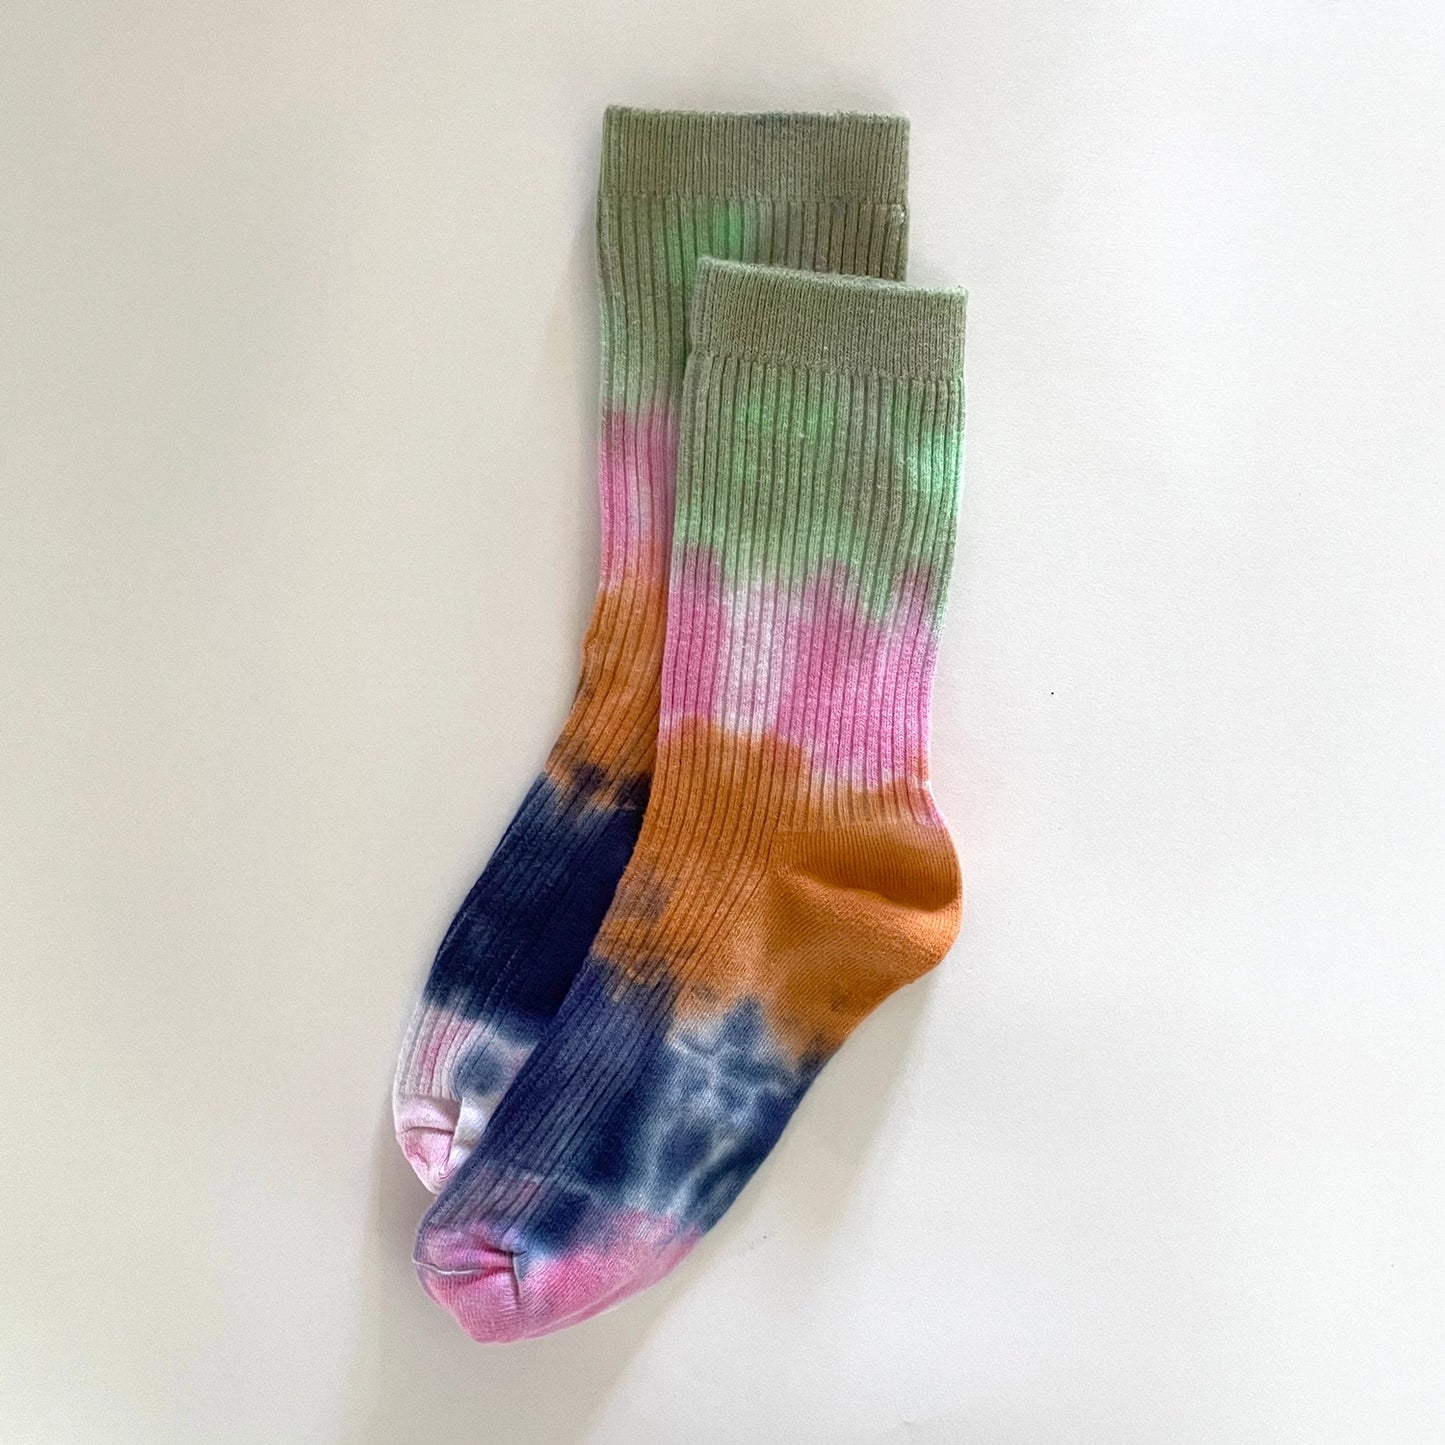 Merle Works - Buenavista Tie-Dye Dressy Socks